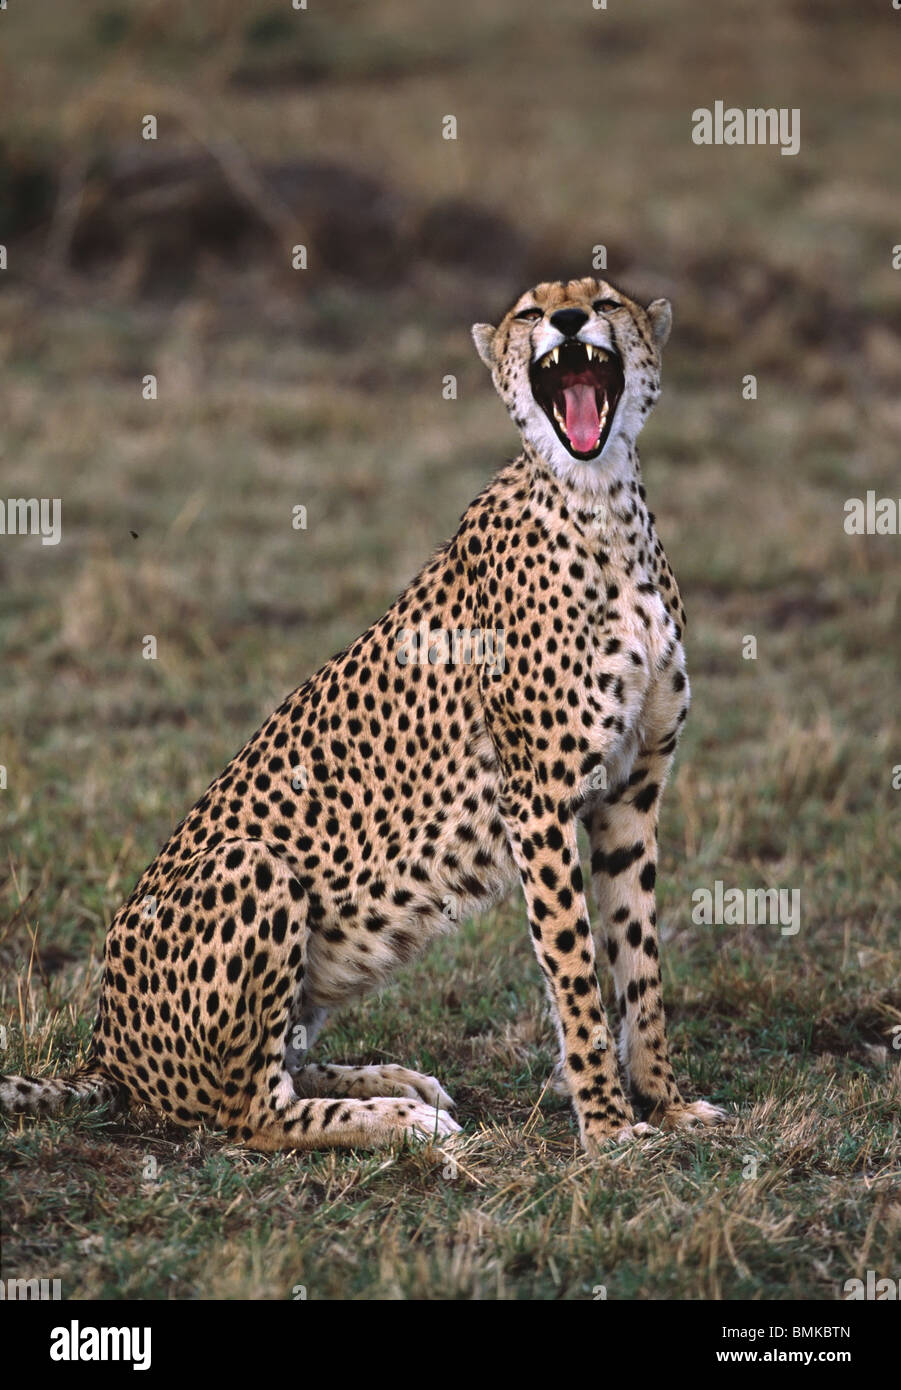 Africa,Kenya,Massai Mara. Cheetah (Acinonyx jubatus) yawning. Stock Photo